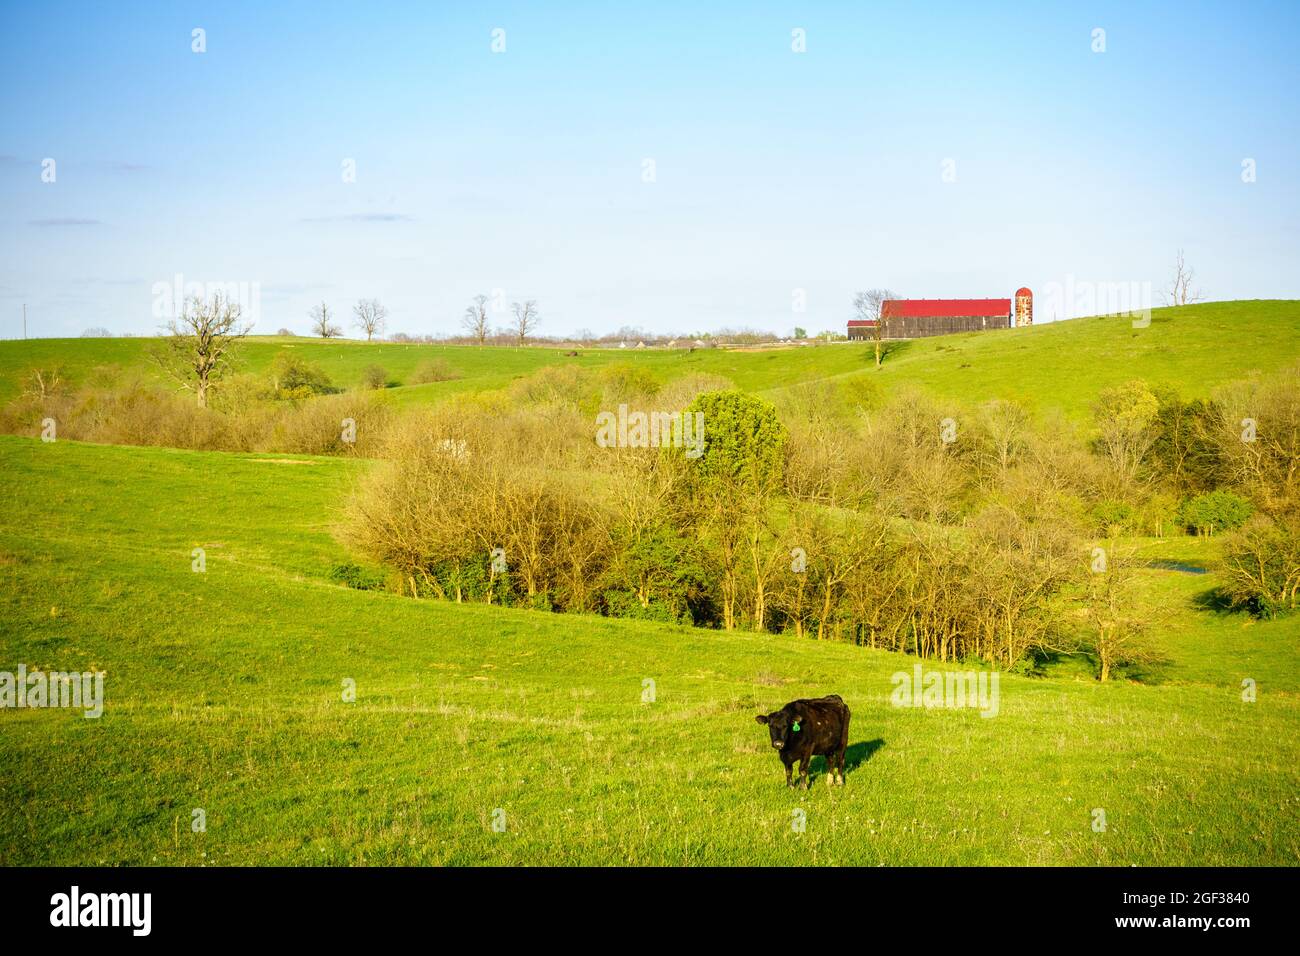 Una mucca nera su un pascolo nel Kentucky centrale Foto Stock